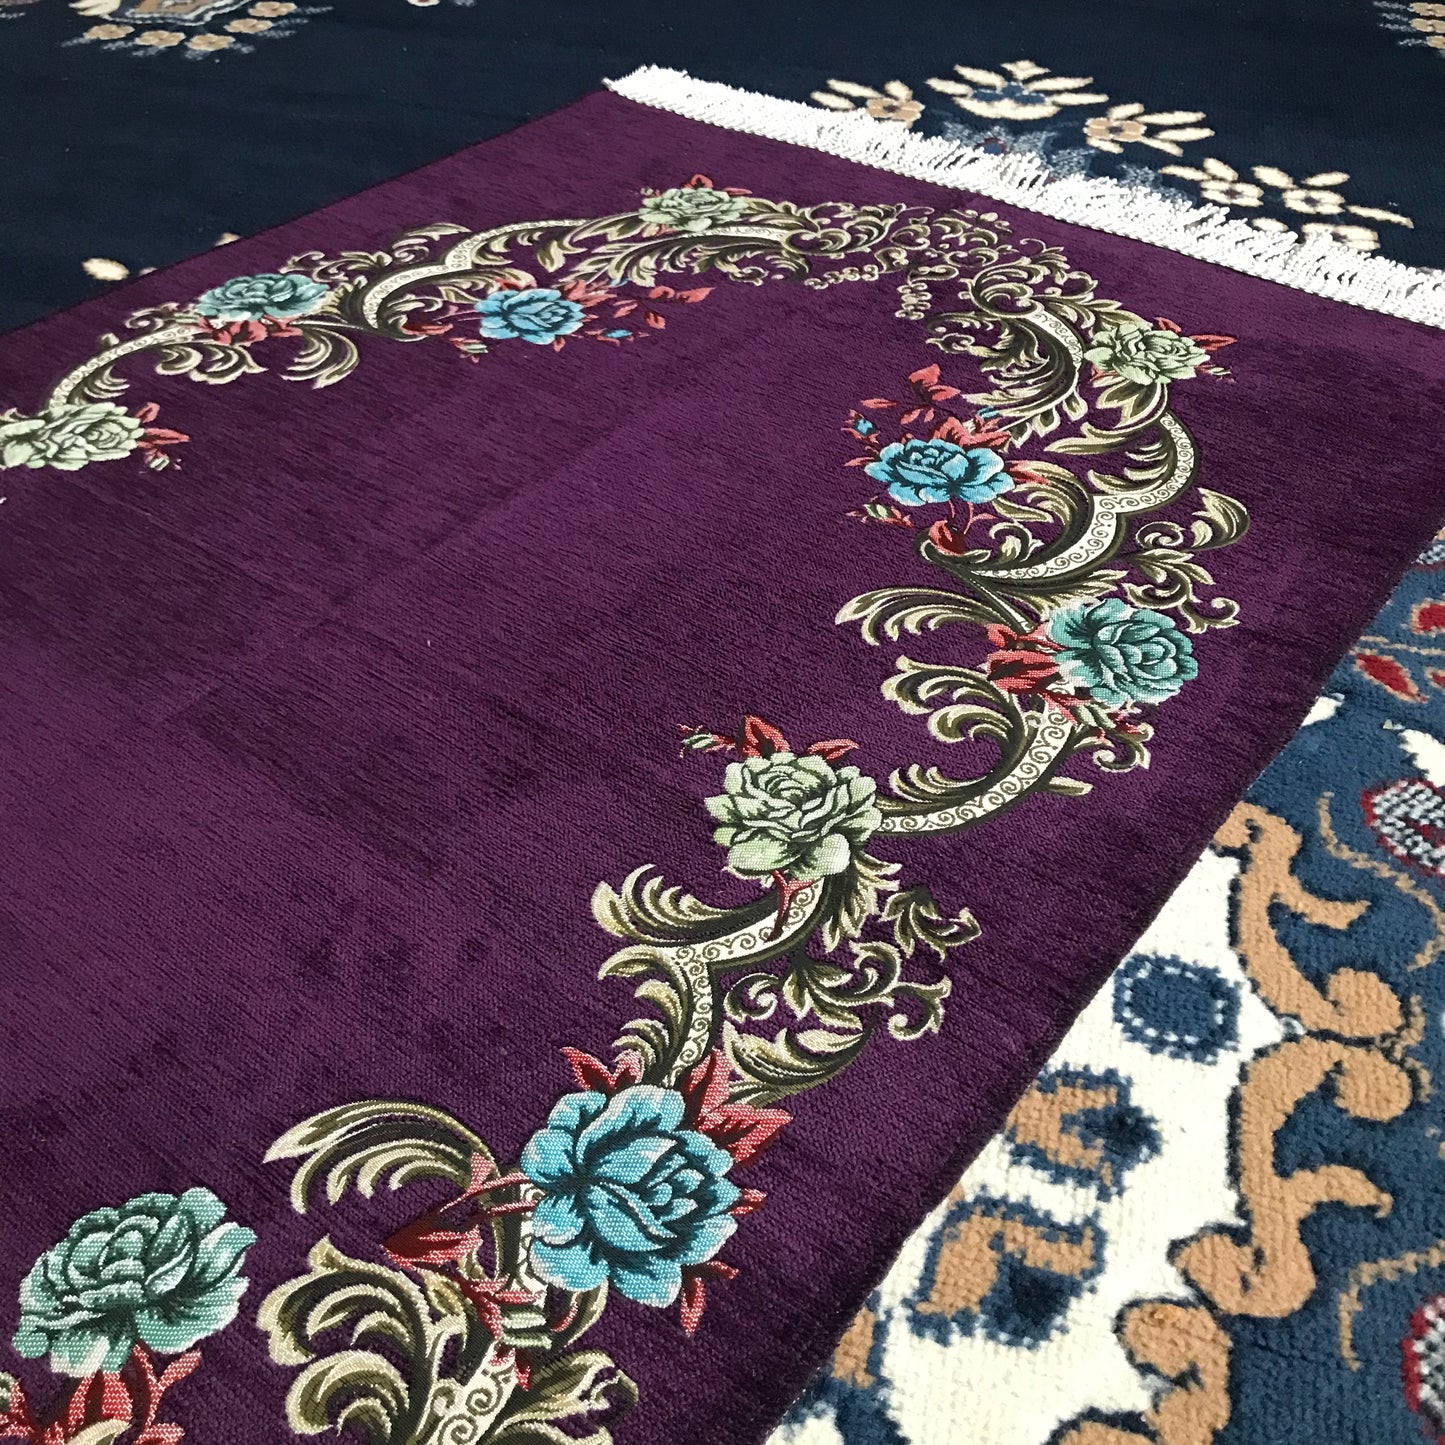 Traditional Uyghur Patterned Embroidered Prayer Rug